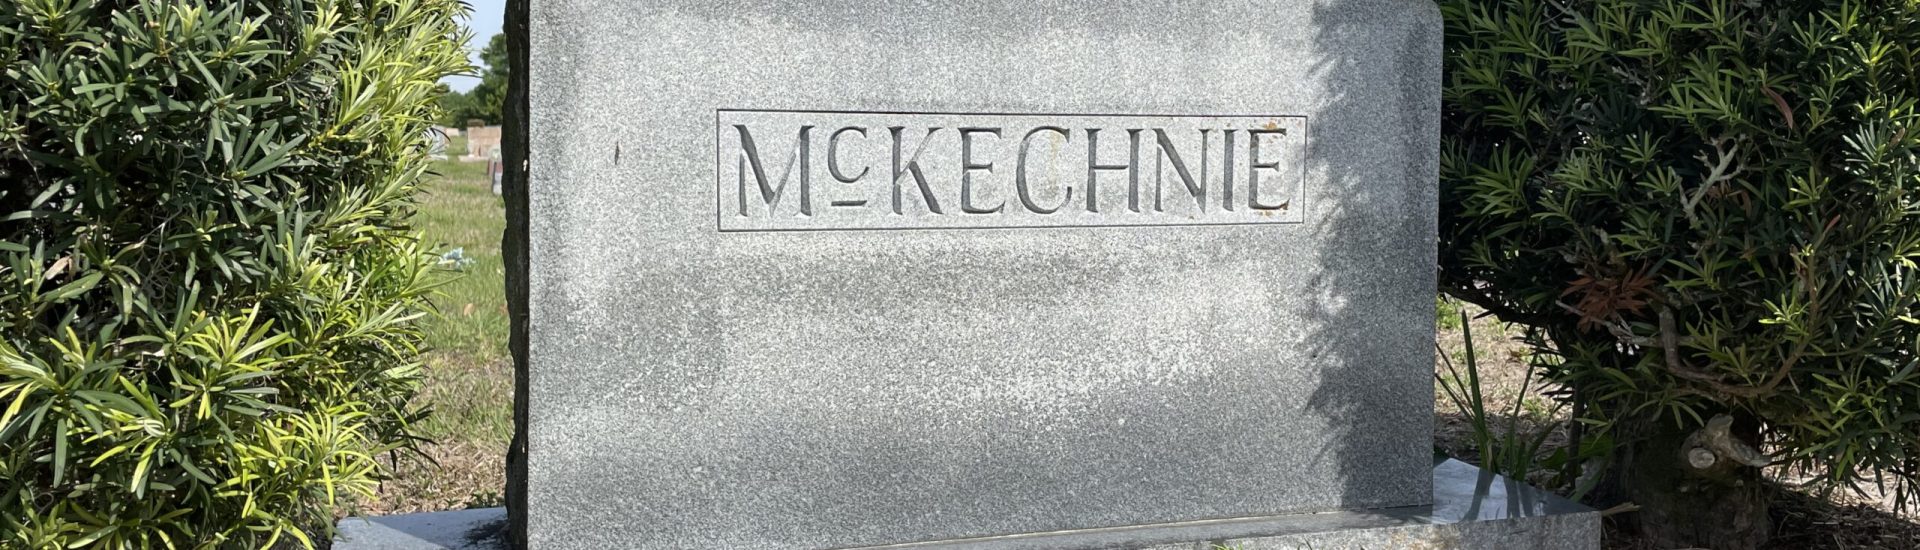 Bill McKechnie